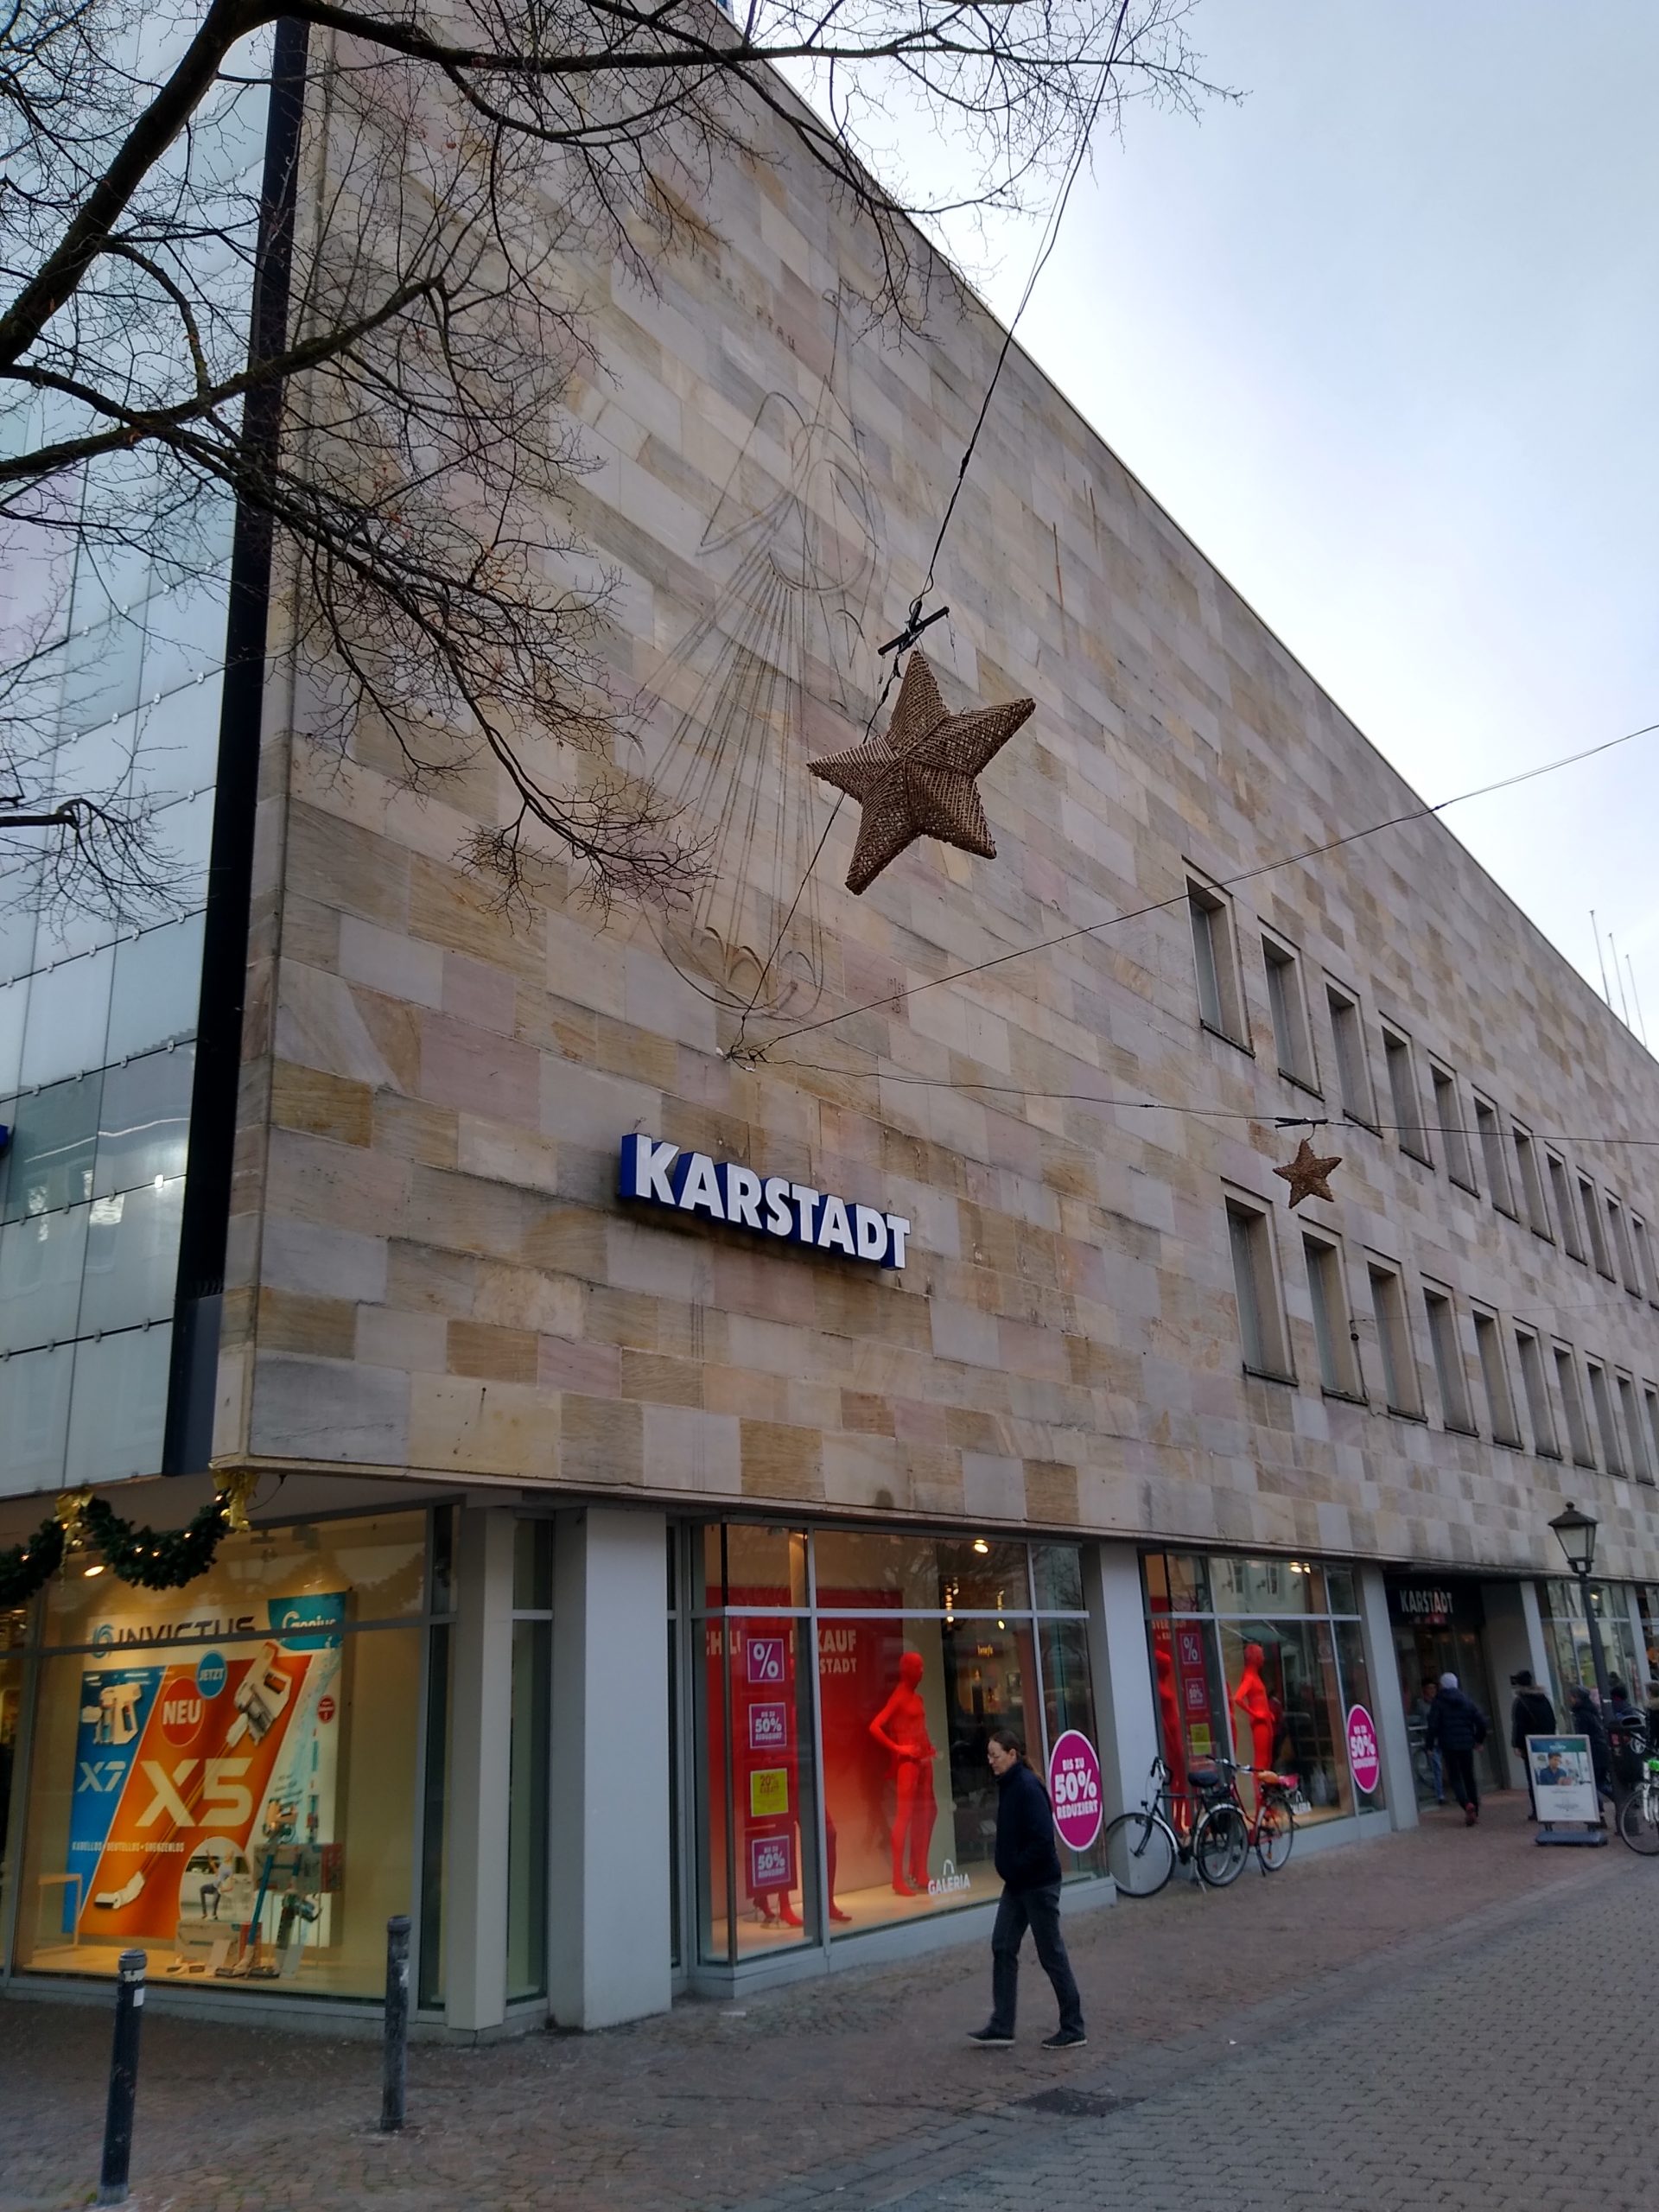 Karstadt-1-scaled-1.jpg